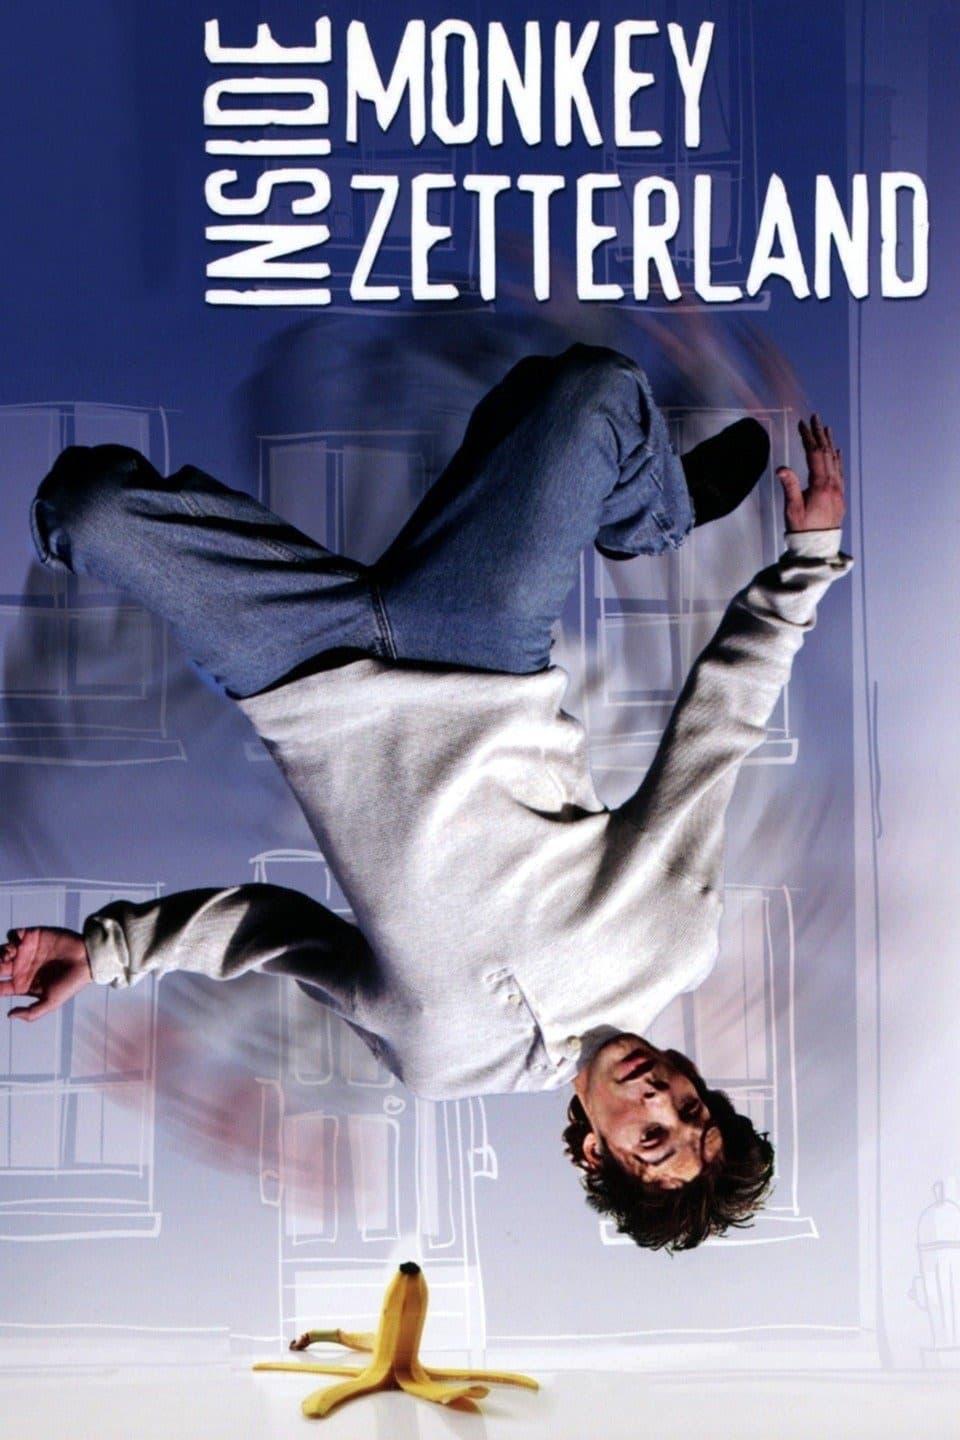 Inside Monkey Zetterland poster